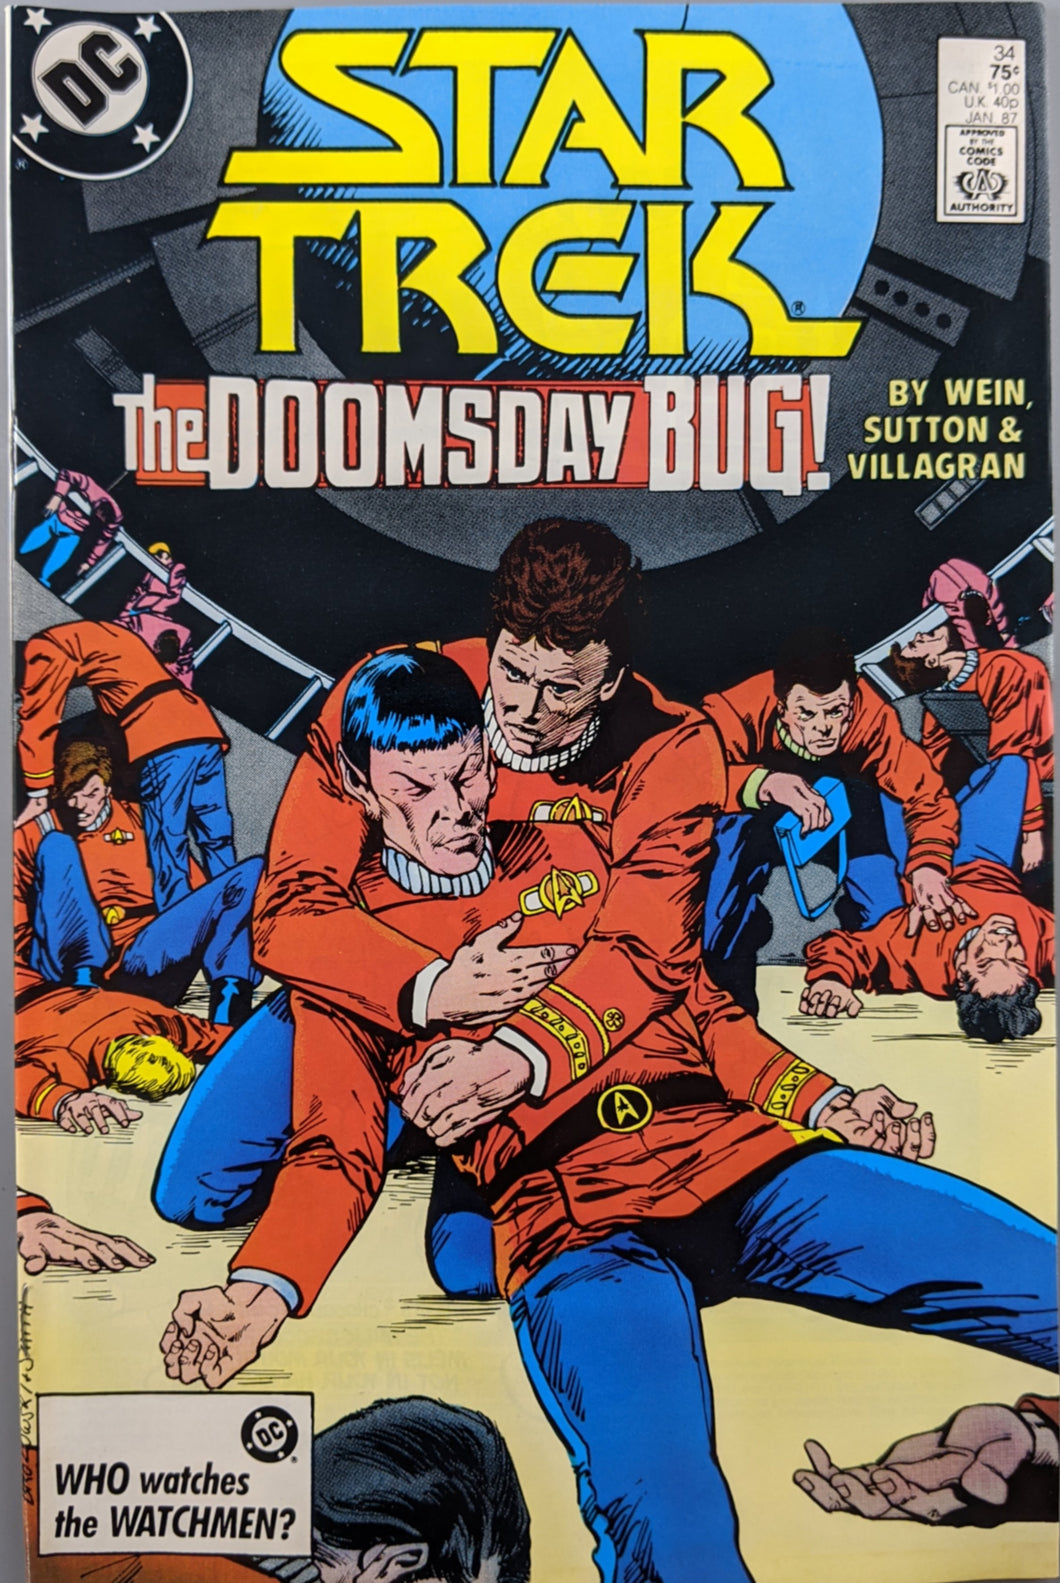 Star Trek #34 Comic Book Cover Art